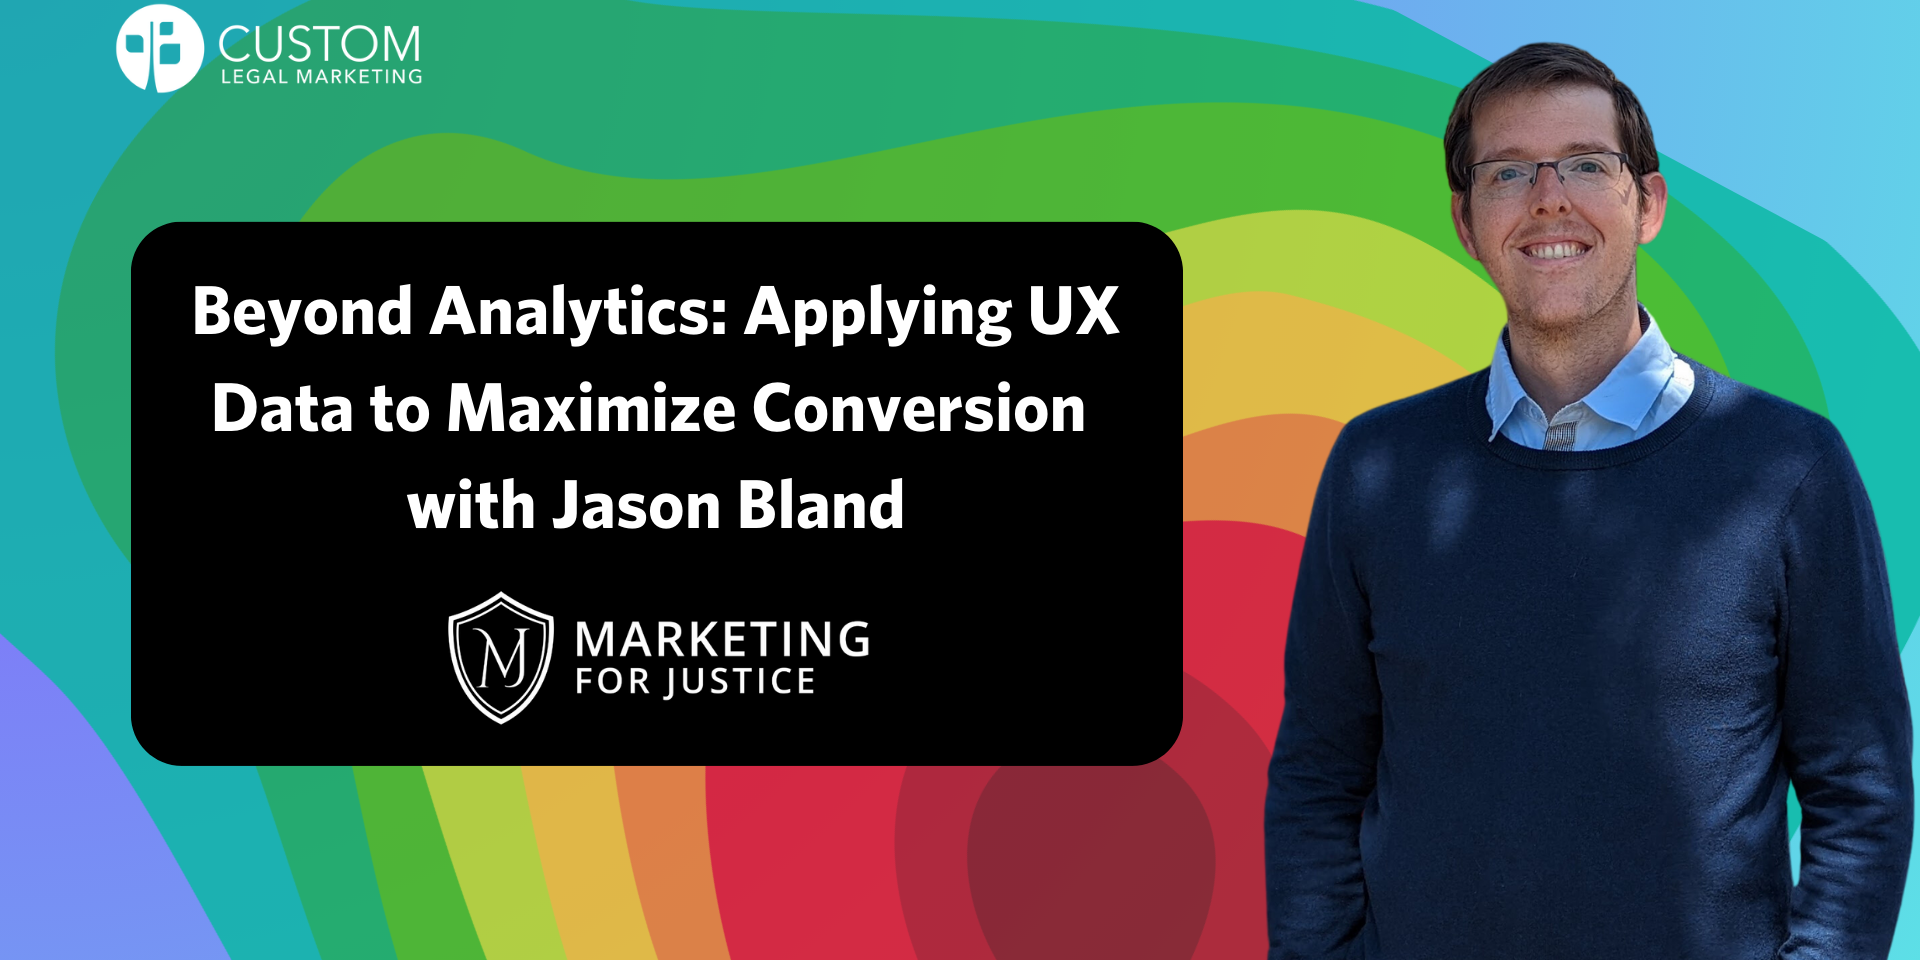 Jason-Bland-marketing-for-Justice-workshop